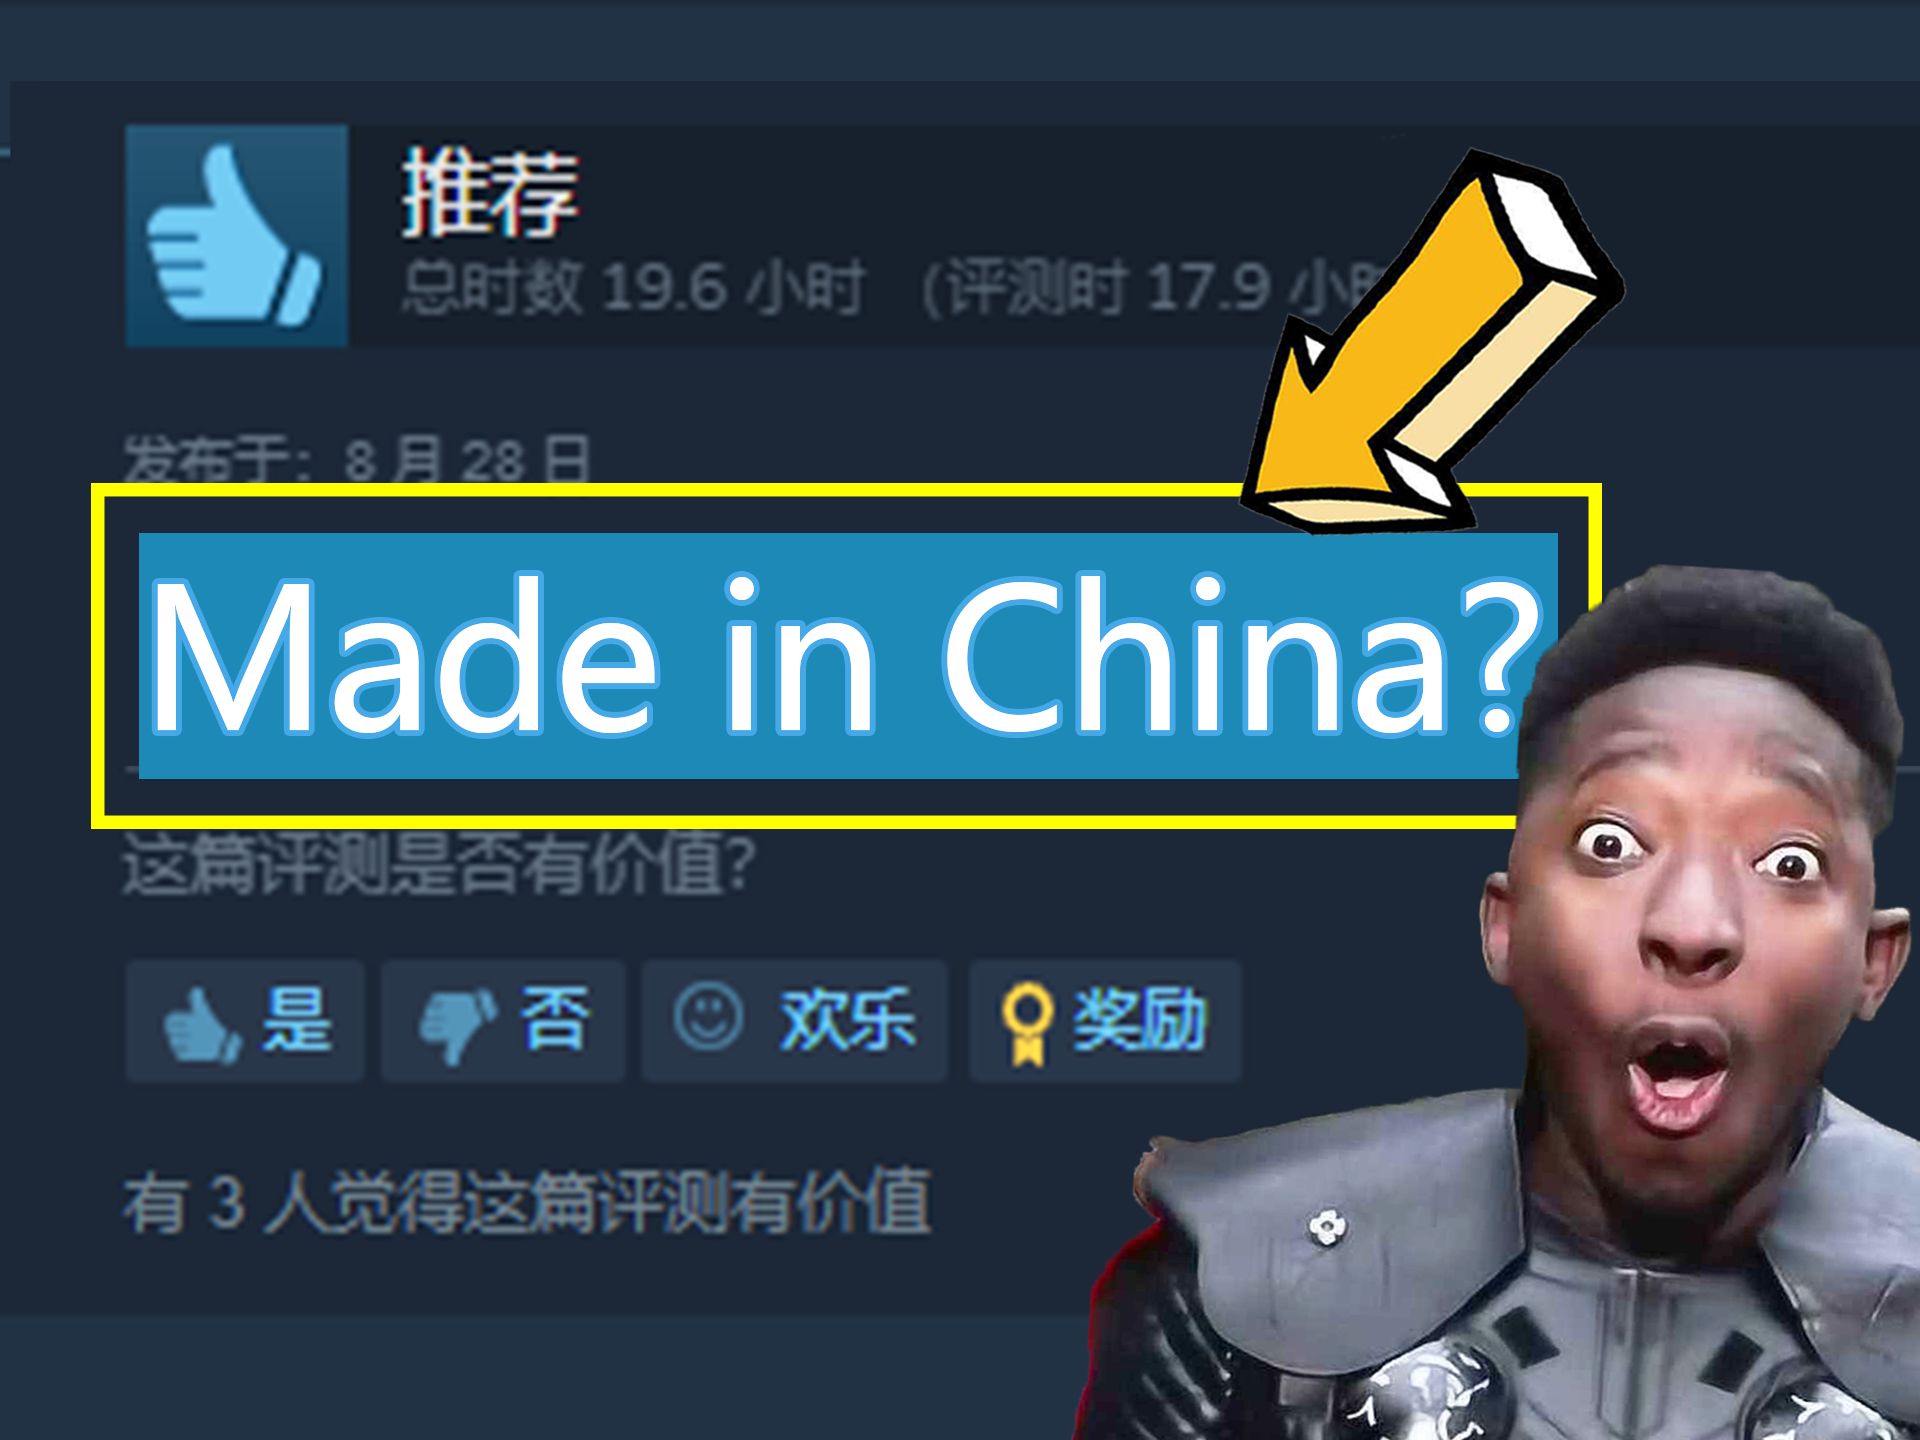 老外：这游戏居然真的是中国做的？！